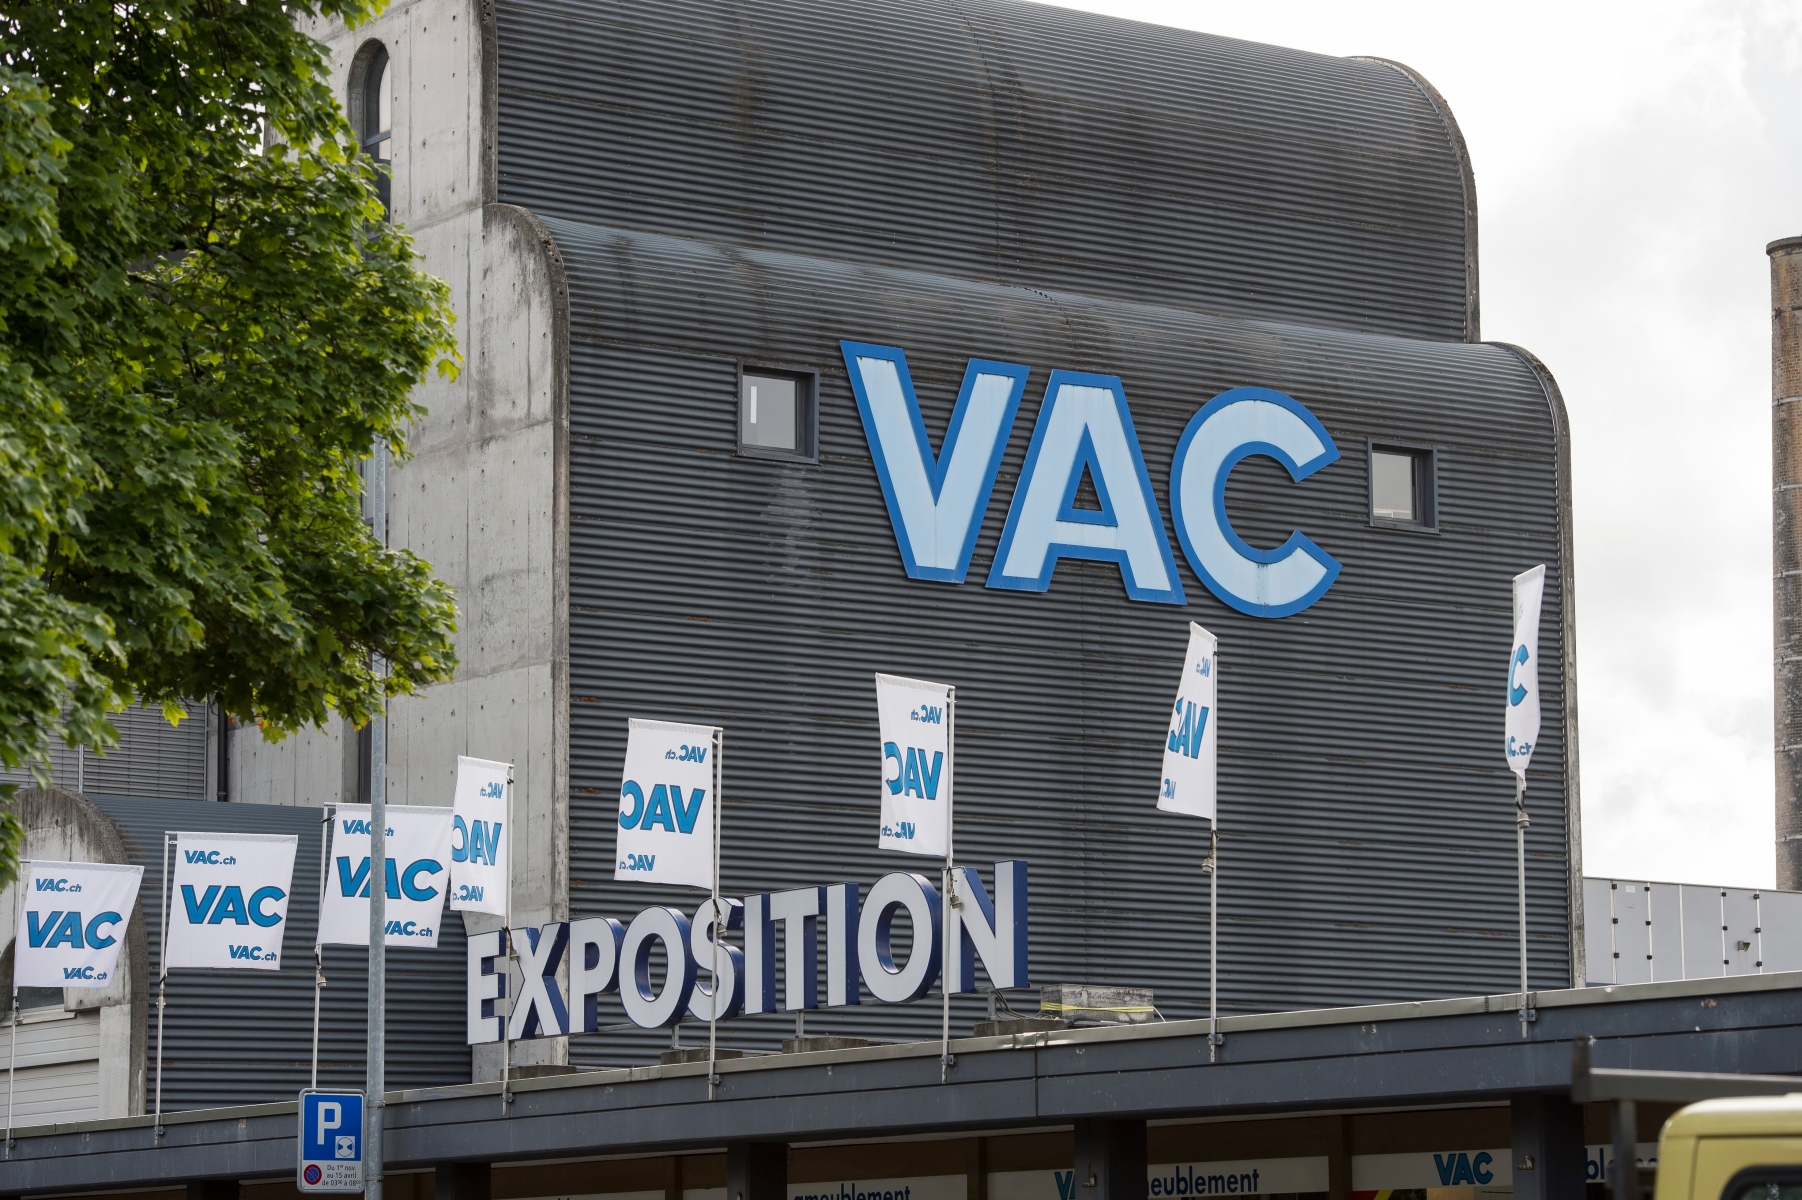 La societe VAC, un magasin de vente directe et par correspondance, installee ala rue des Cretets 130



La Chaux-de-Fonds, le 13 juillet 2016

Photo: Lucas Vuitel VENTE PAR CORRESPONDANCE